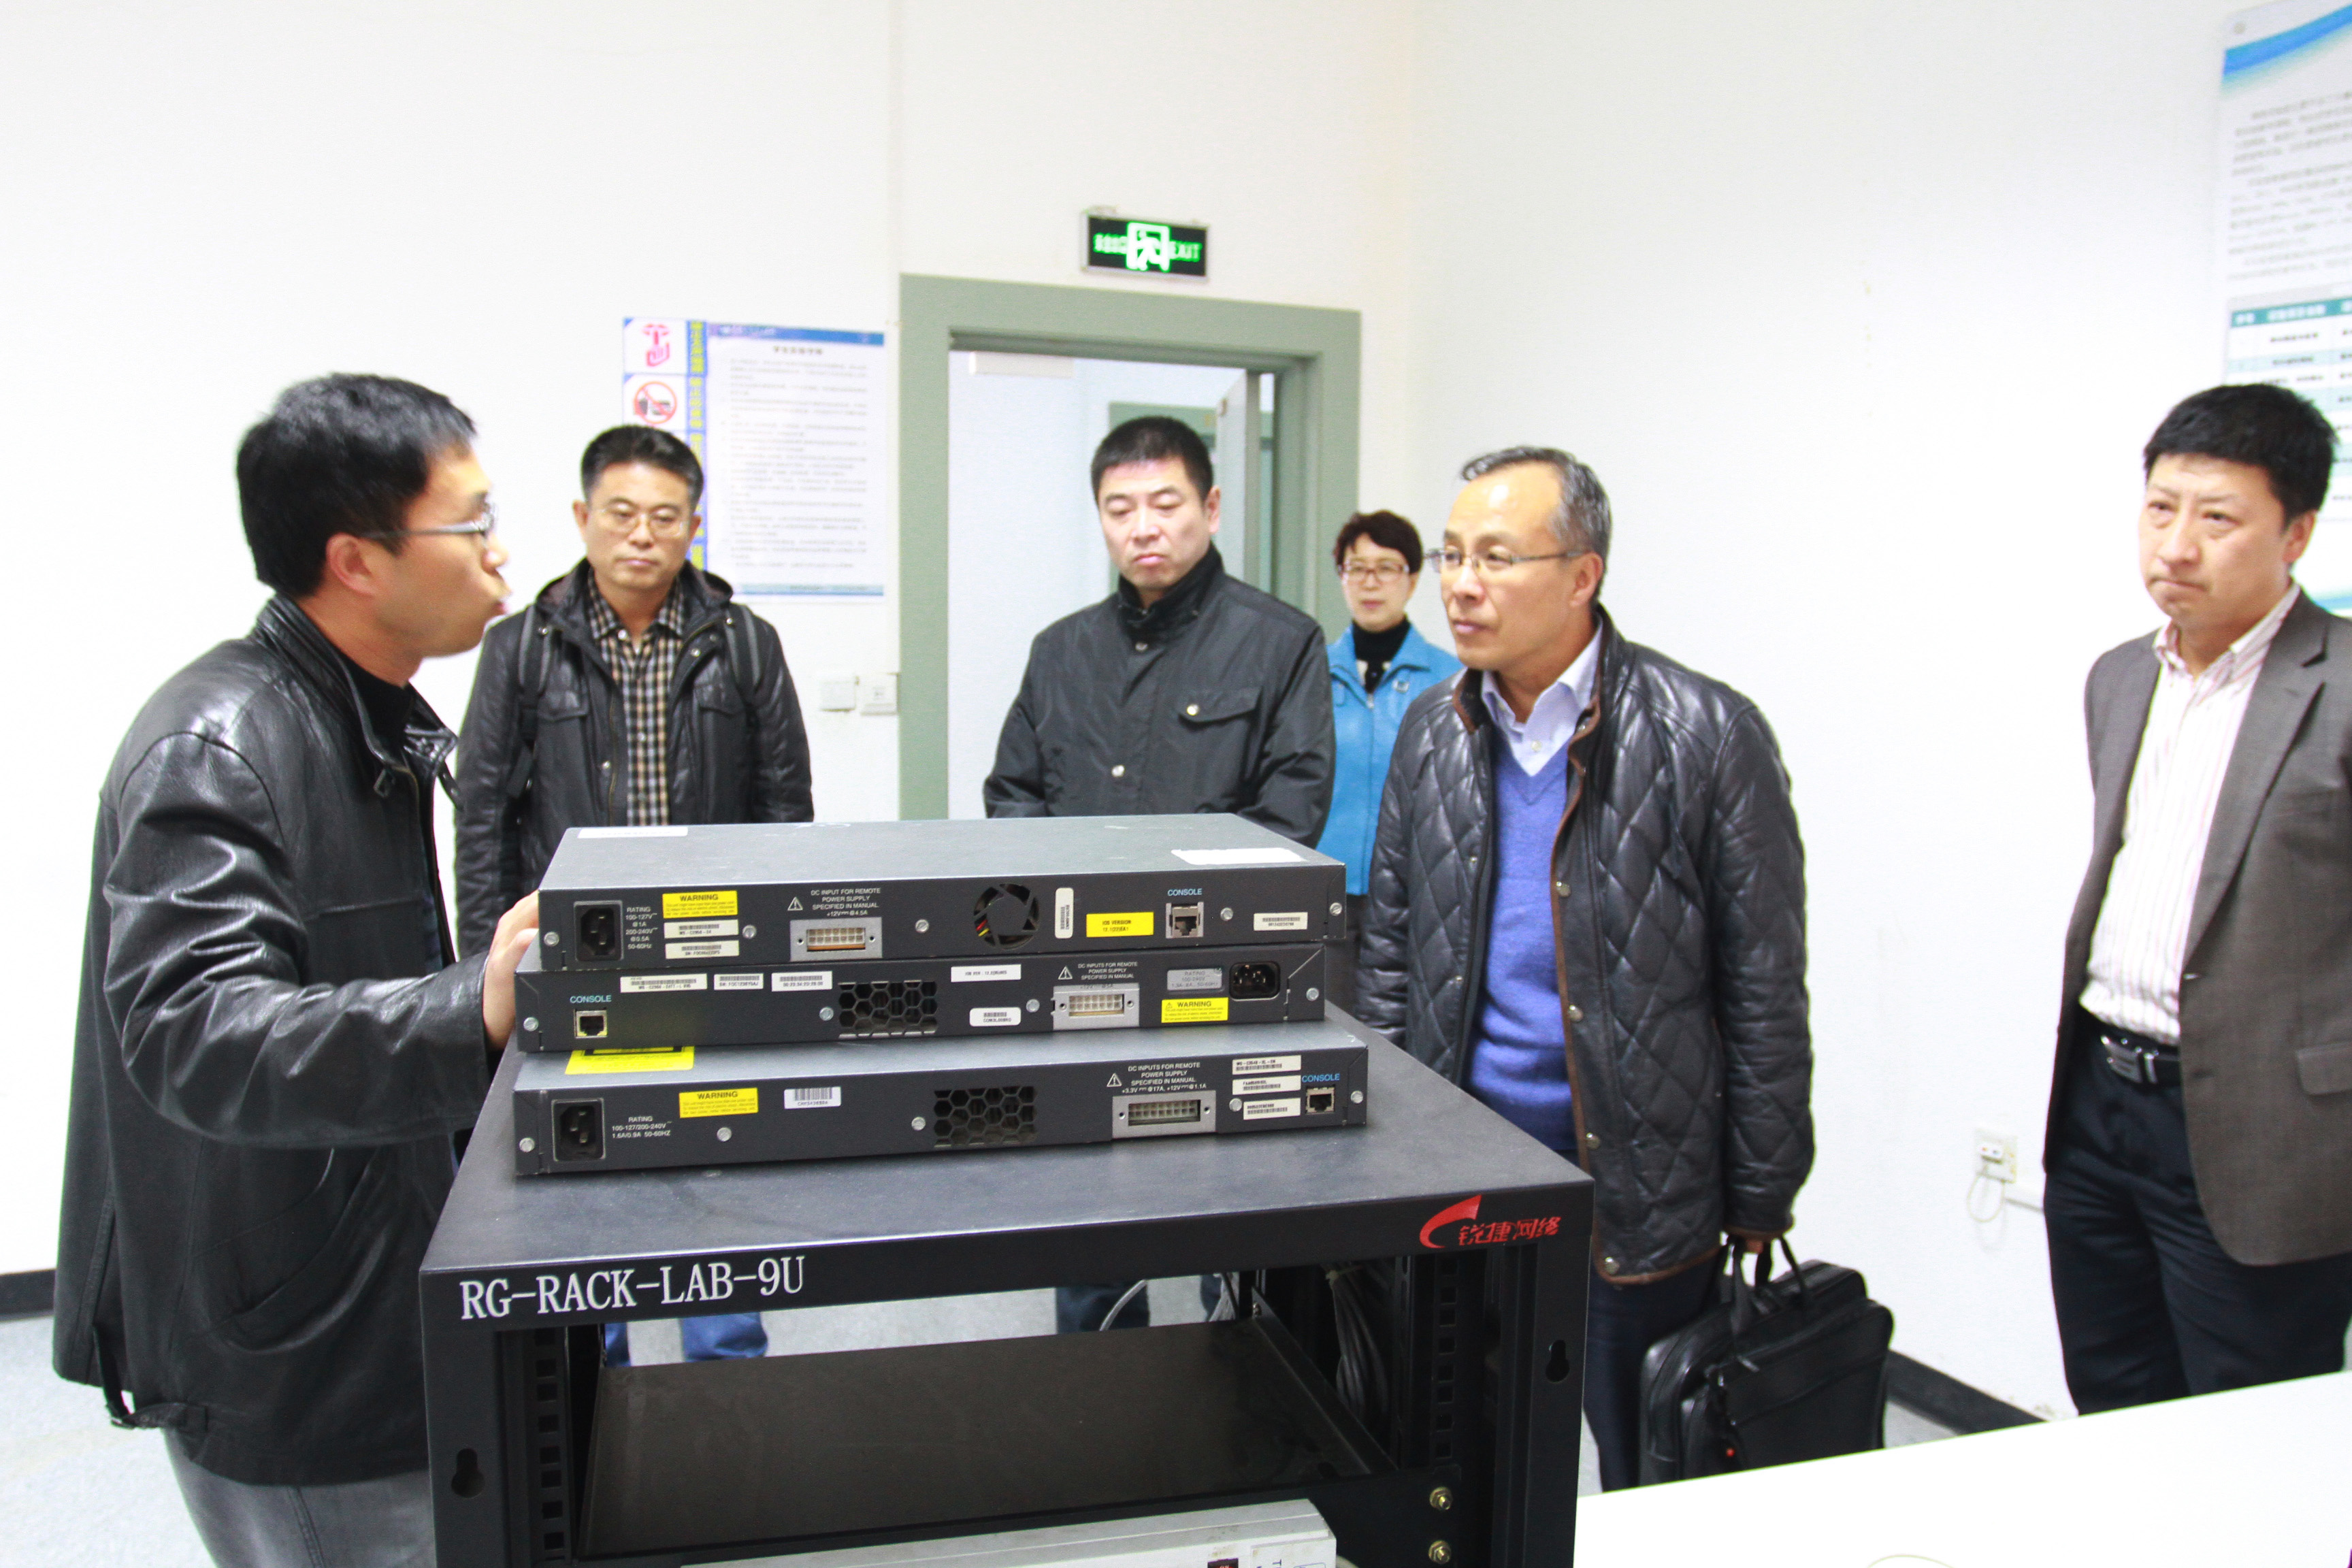 教学支持与实验中心副主任张志亮带领来访专家参观实验室